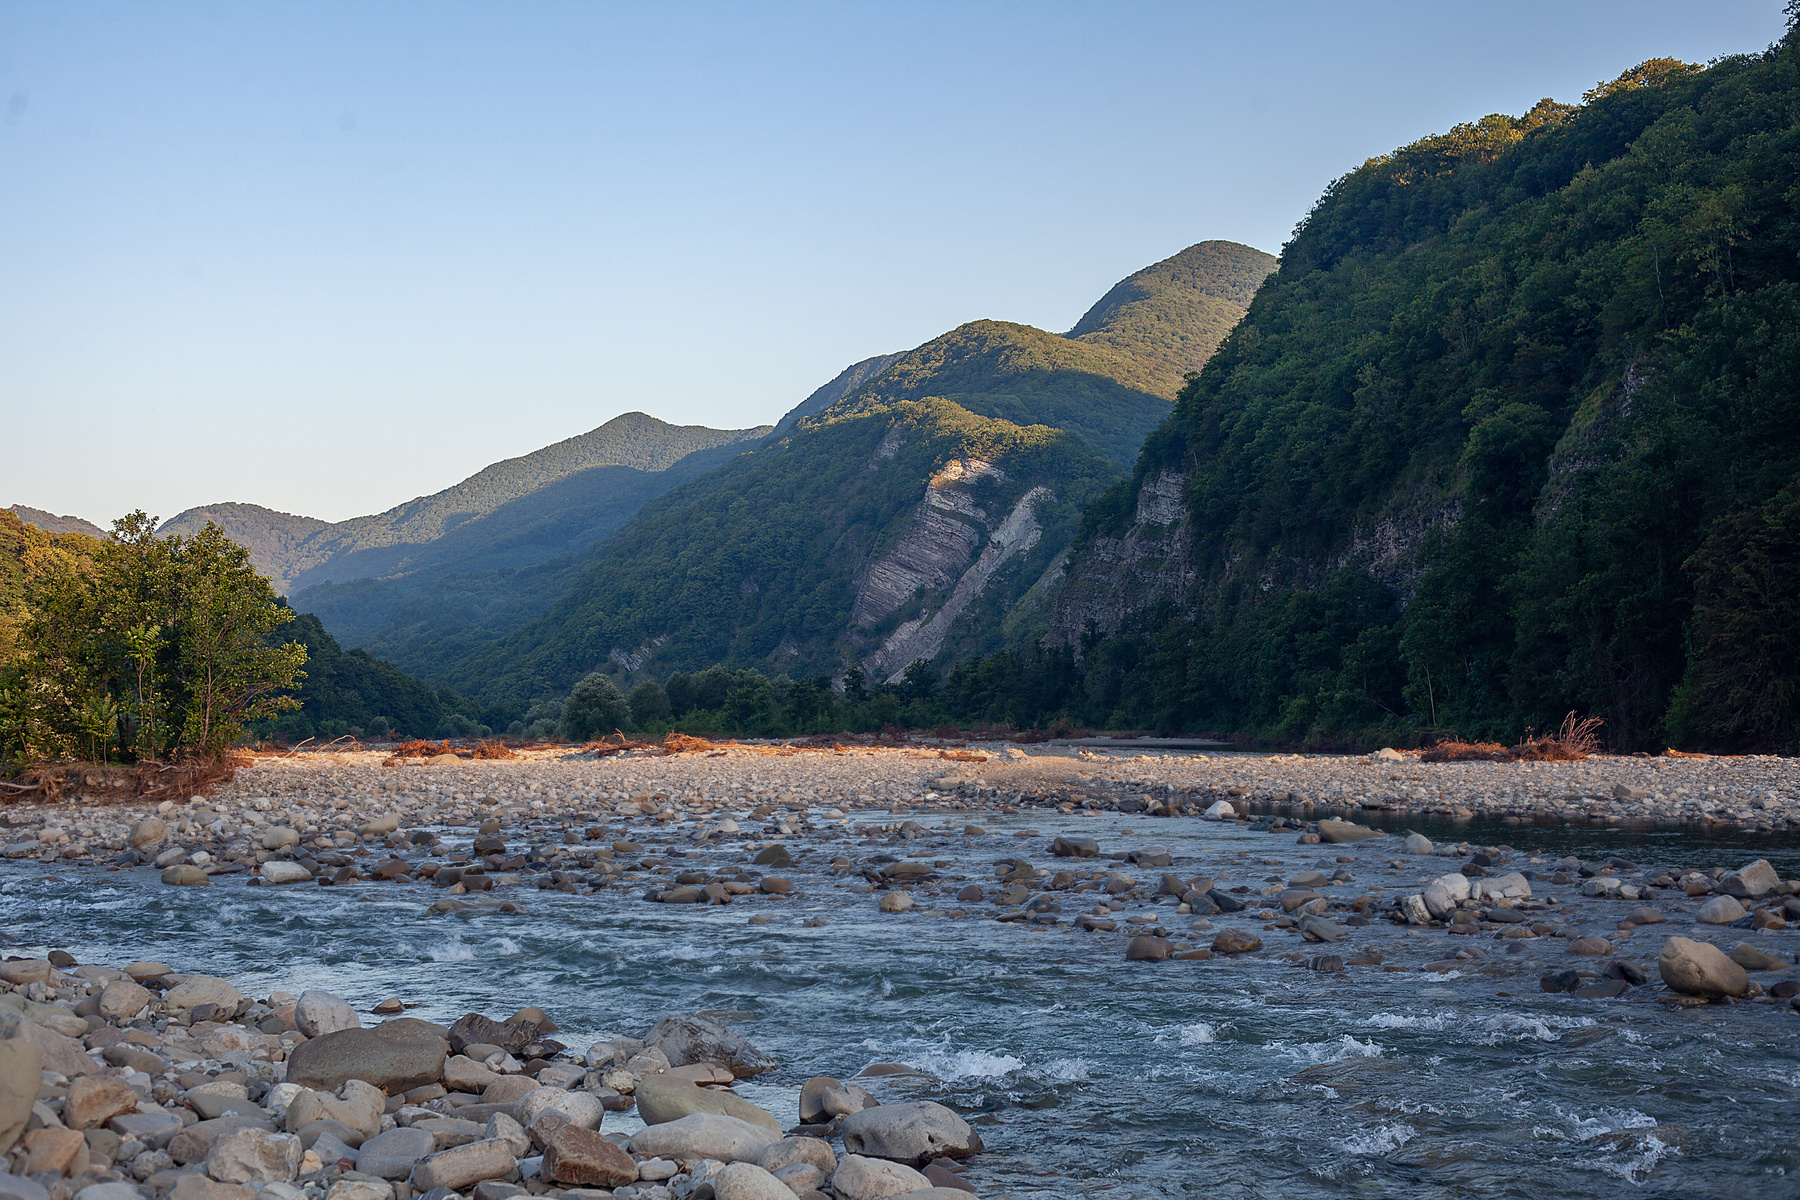 Река Аше близ аула Калеж утром (2) река Аше горы Калеж утро Кавказ